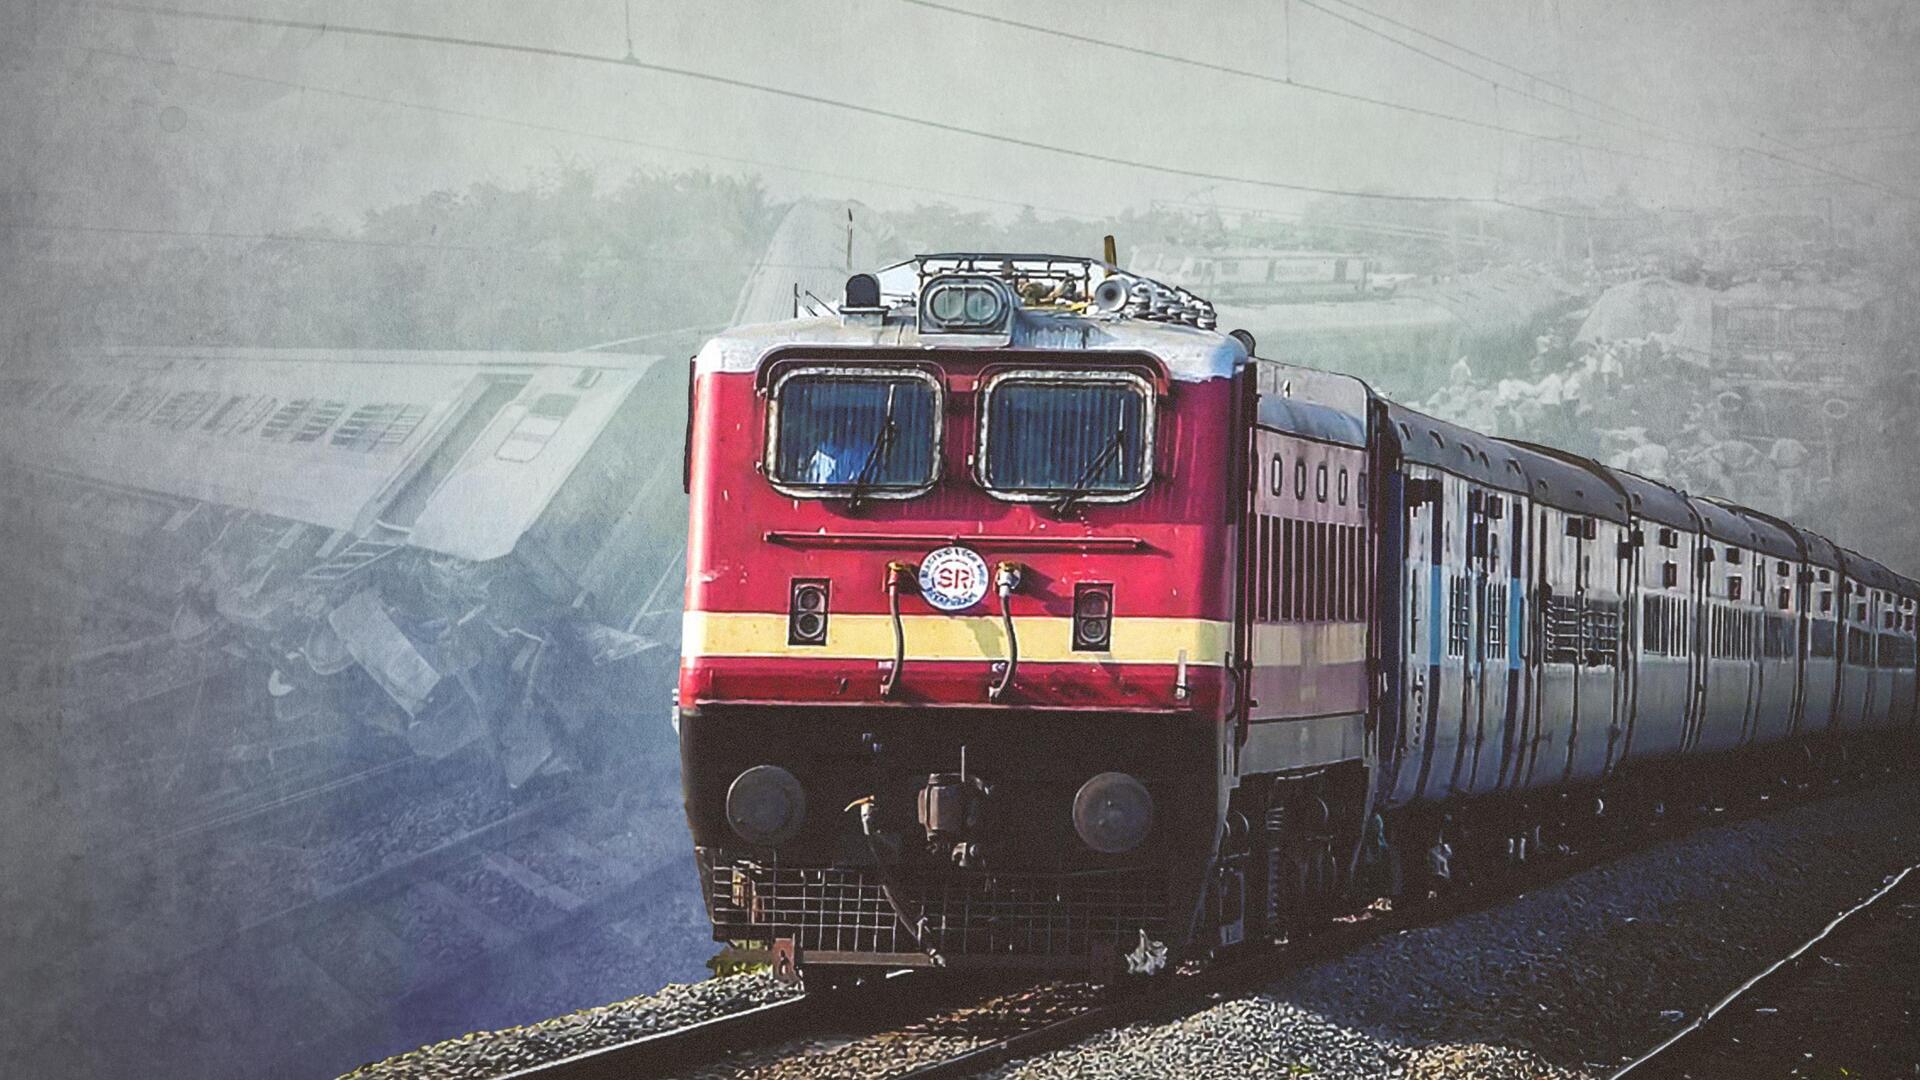 ओडिशा ट्रेन हादसा: रूट पर नहीं मौजूद था 'कवच', गलत ट्रैक पर थी कोरोमंडल एक्सप्रेस- रिपोर्ट